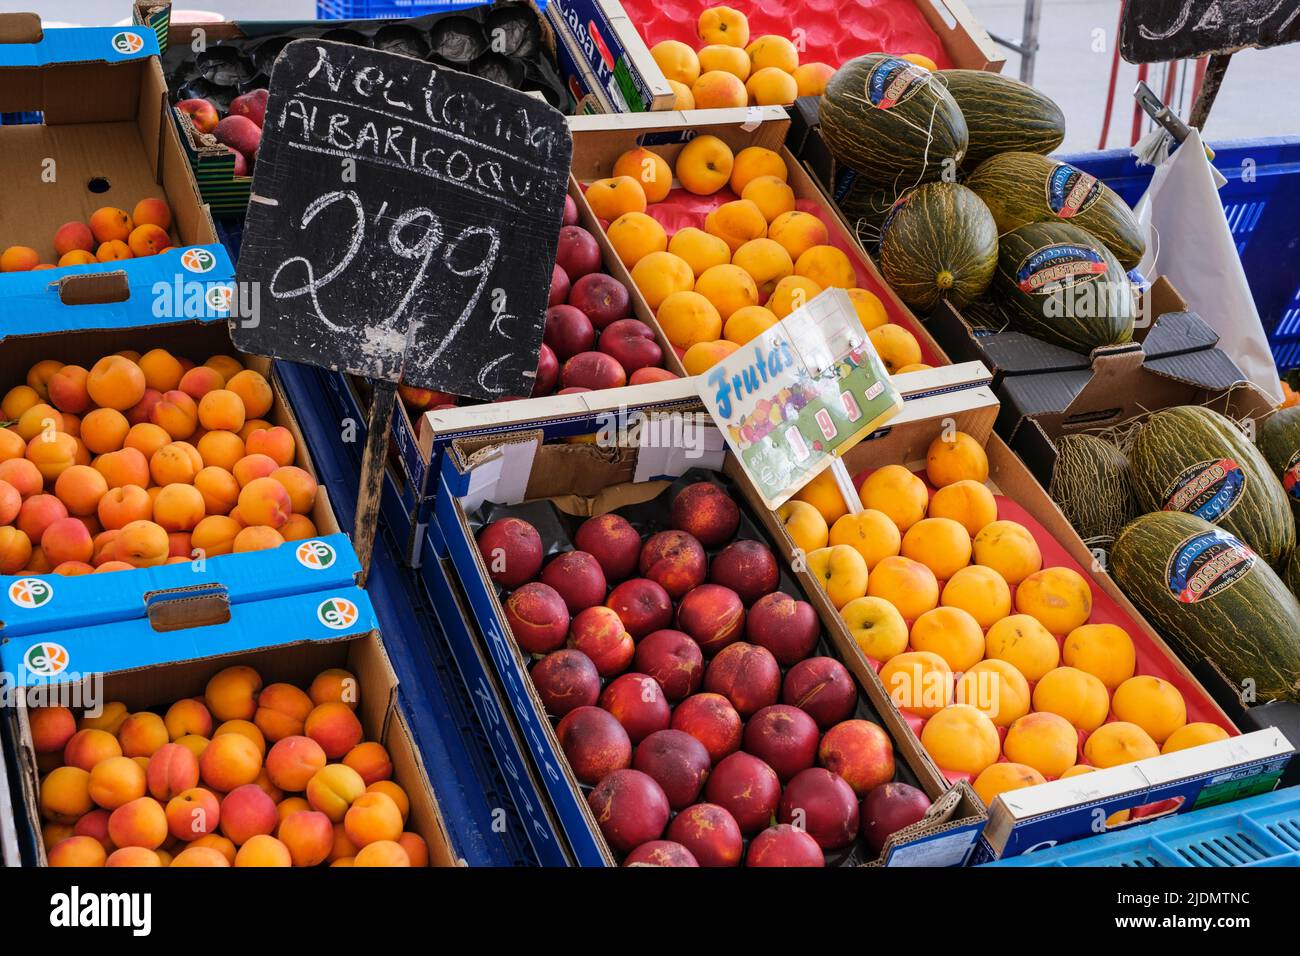 Spanien, Astorga, Castilla y Leon. Dienstag Markt, Obstverkäufer, Aprikosen, Nektarinen, Melonen. Stockfoto